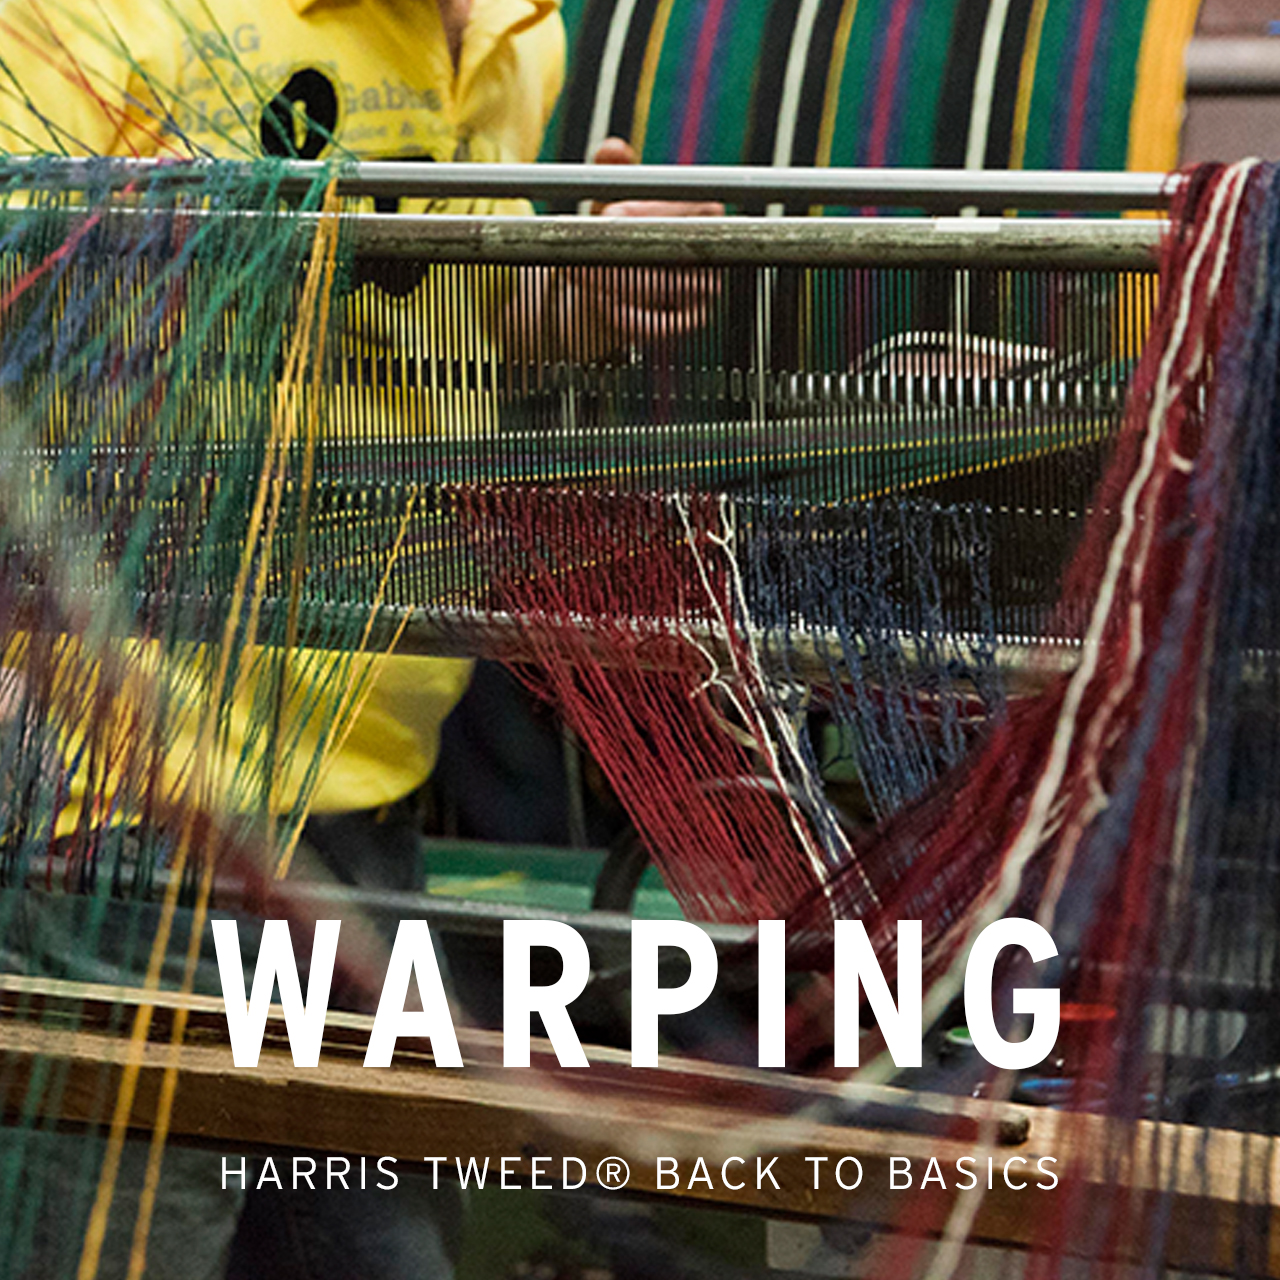 Harris Tweed Authority Warping series